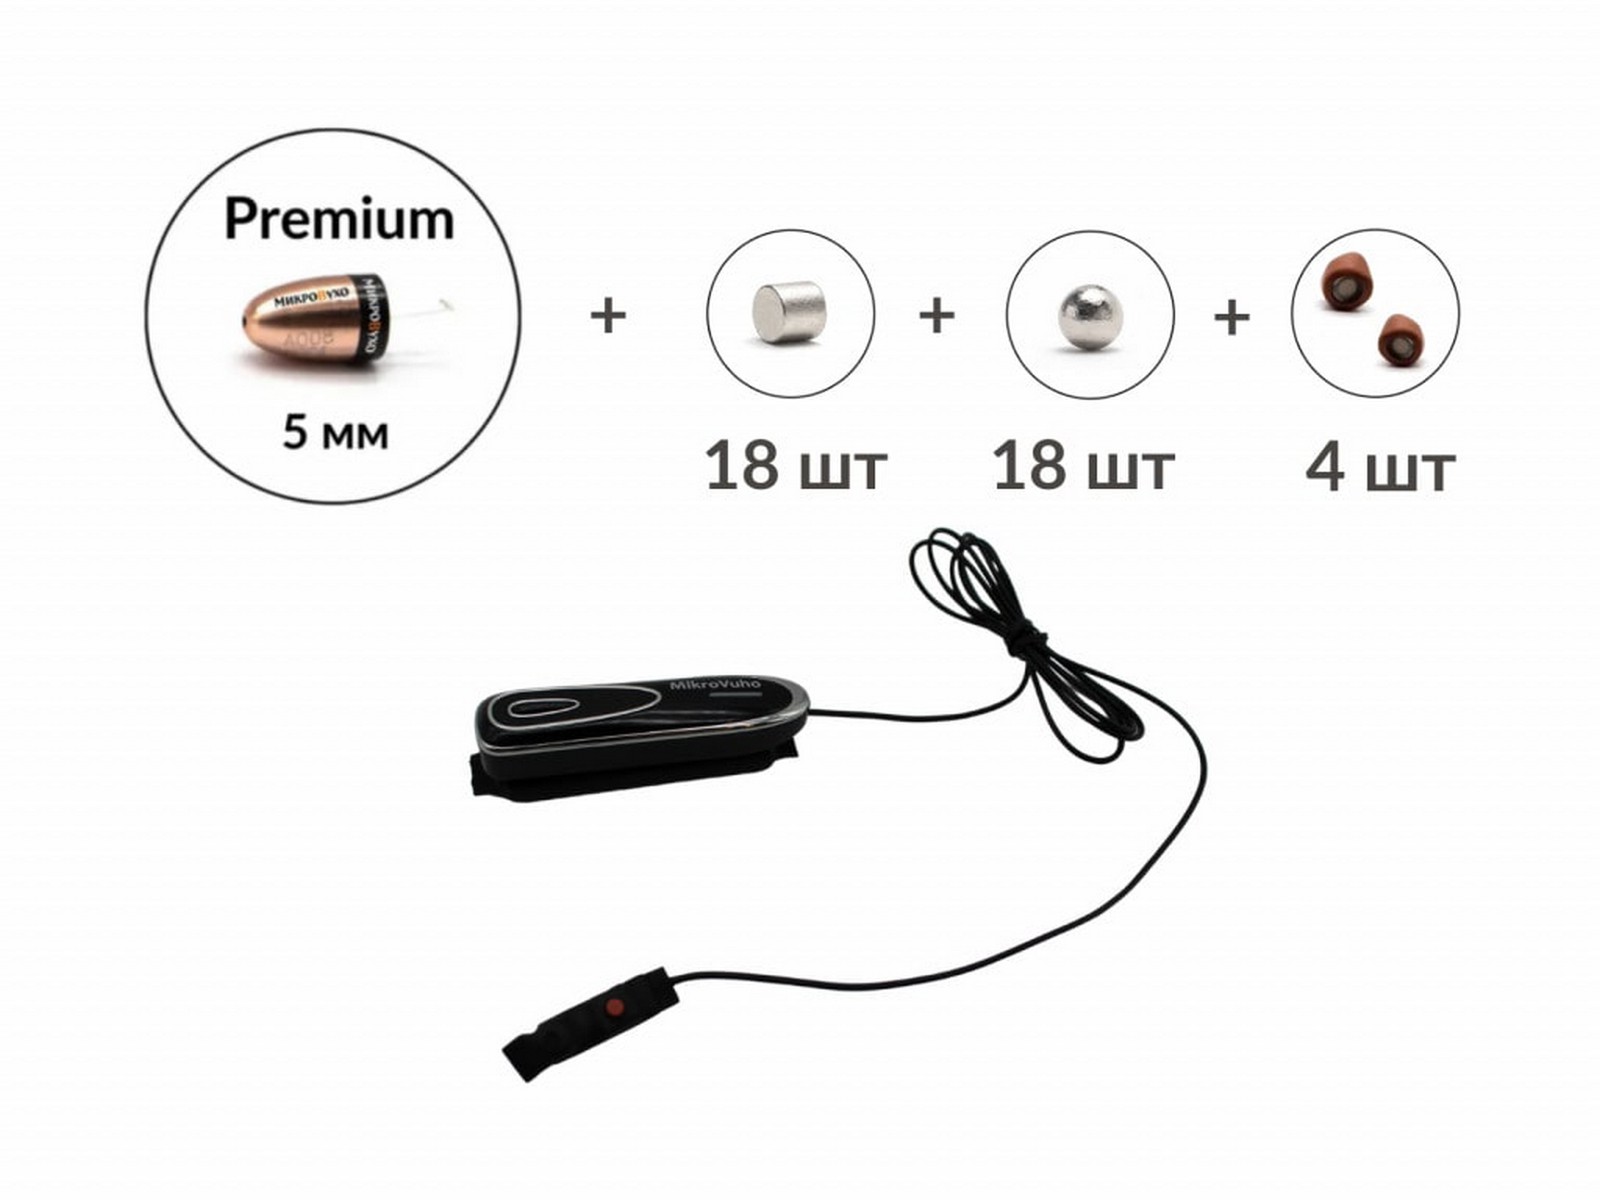 Универсальная гарнитура Bluetooth Box Premier Plus с капсулой Premium и магнитами 2 мм - изображение 2